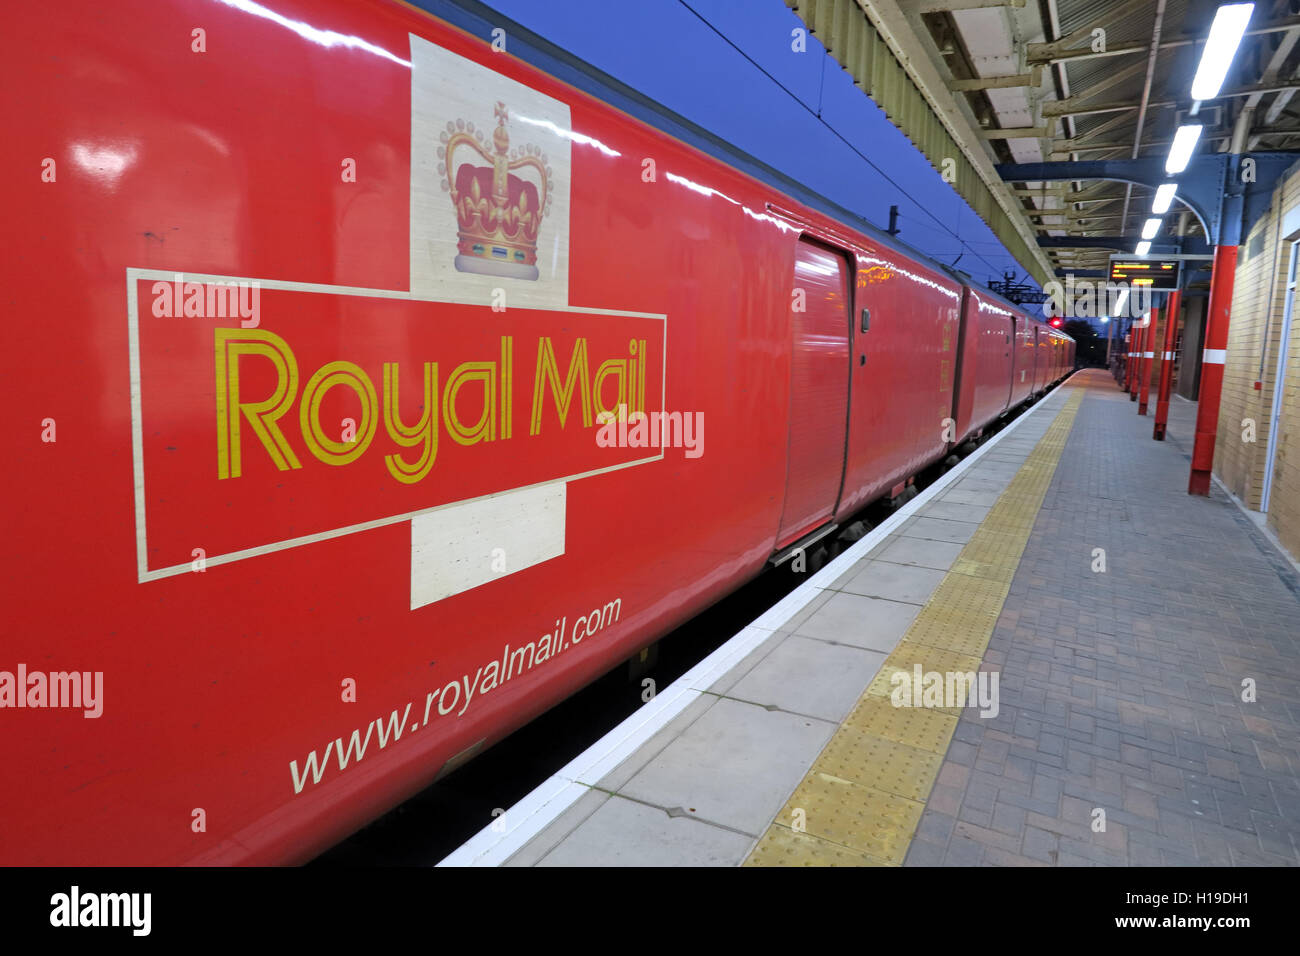 Royal Mail ( RoyalMail.com) train TPO, bureau de poste voyageant vers le nord de Warrington Bank Quay Station, Angleterre, Royaume-Uni, WA1 1UP Banque D'Images